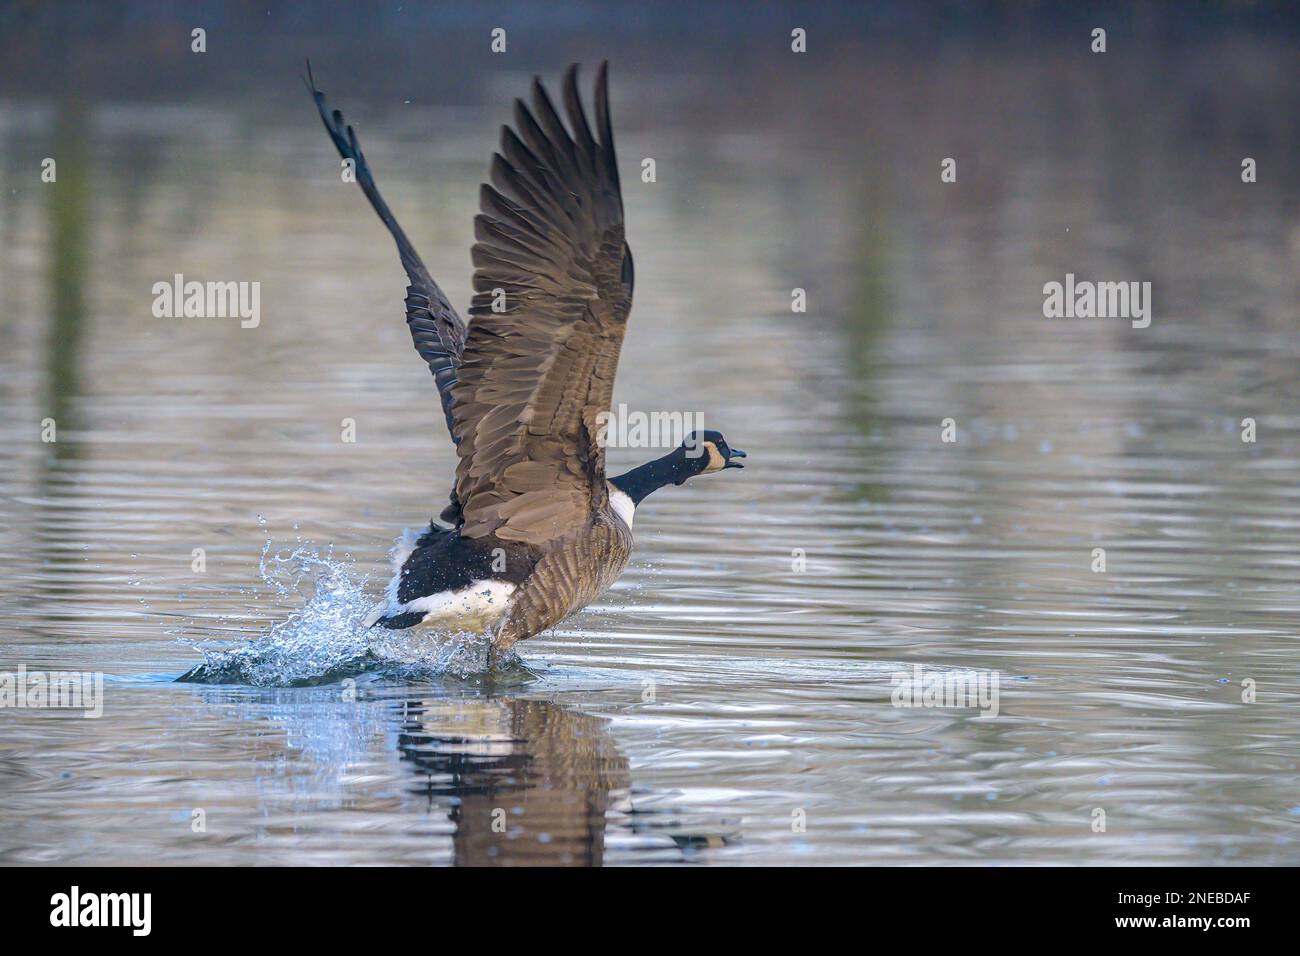 Le ali sollevate, un grande maschio Canada Goose inizia a caricarsi lungo una pista acquosa per farsi trasportare dall'aria. Foto Stock